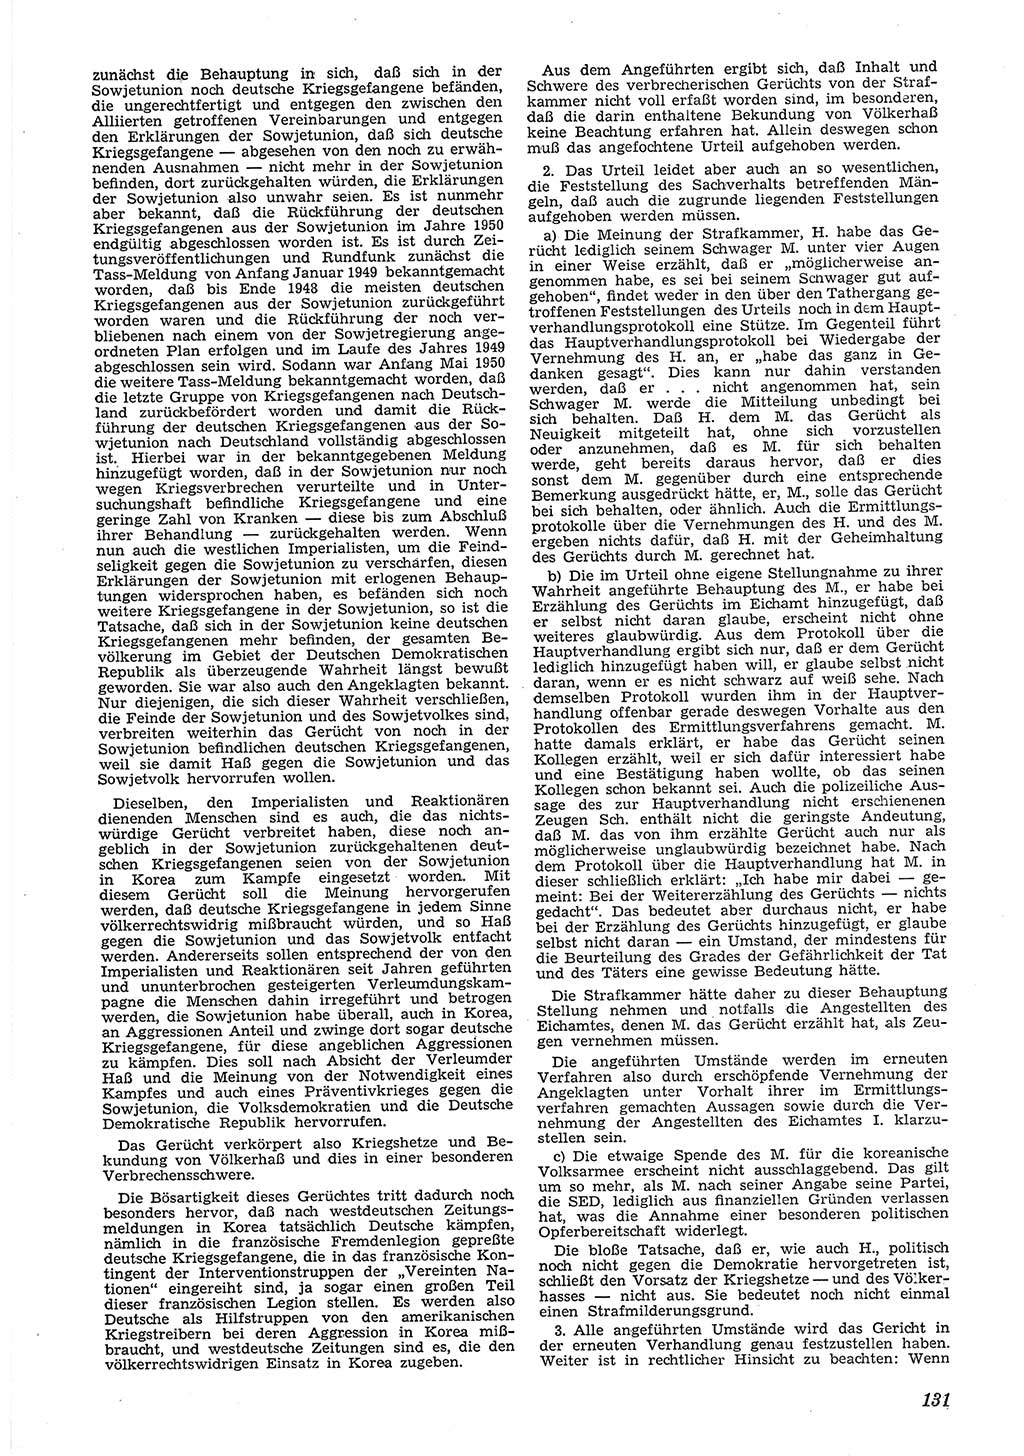 Neue Justiz (NJ), Zeitschrift für Recht und Rechtswissenschaft [Deutsche Demokratische Republik (DDR)], 6. Jahrgang 1952, Seite 131 (NJ DDR 1952, S. 131)